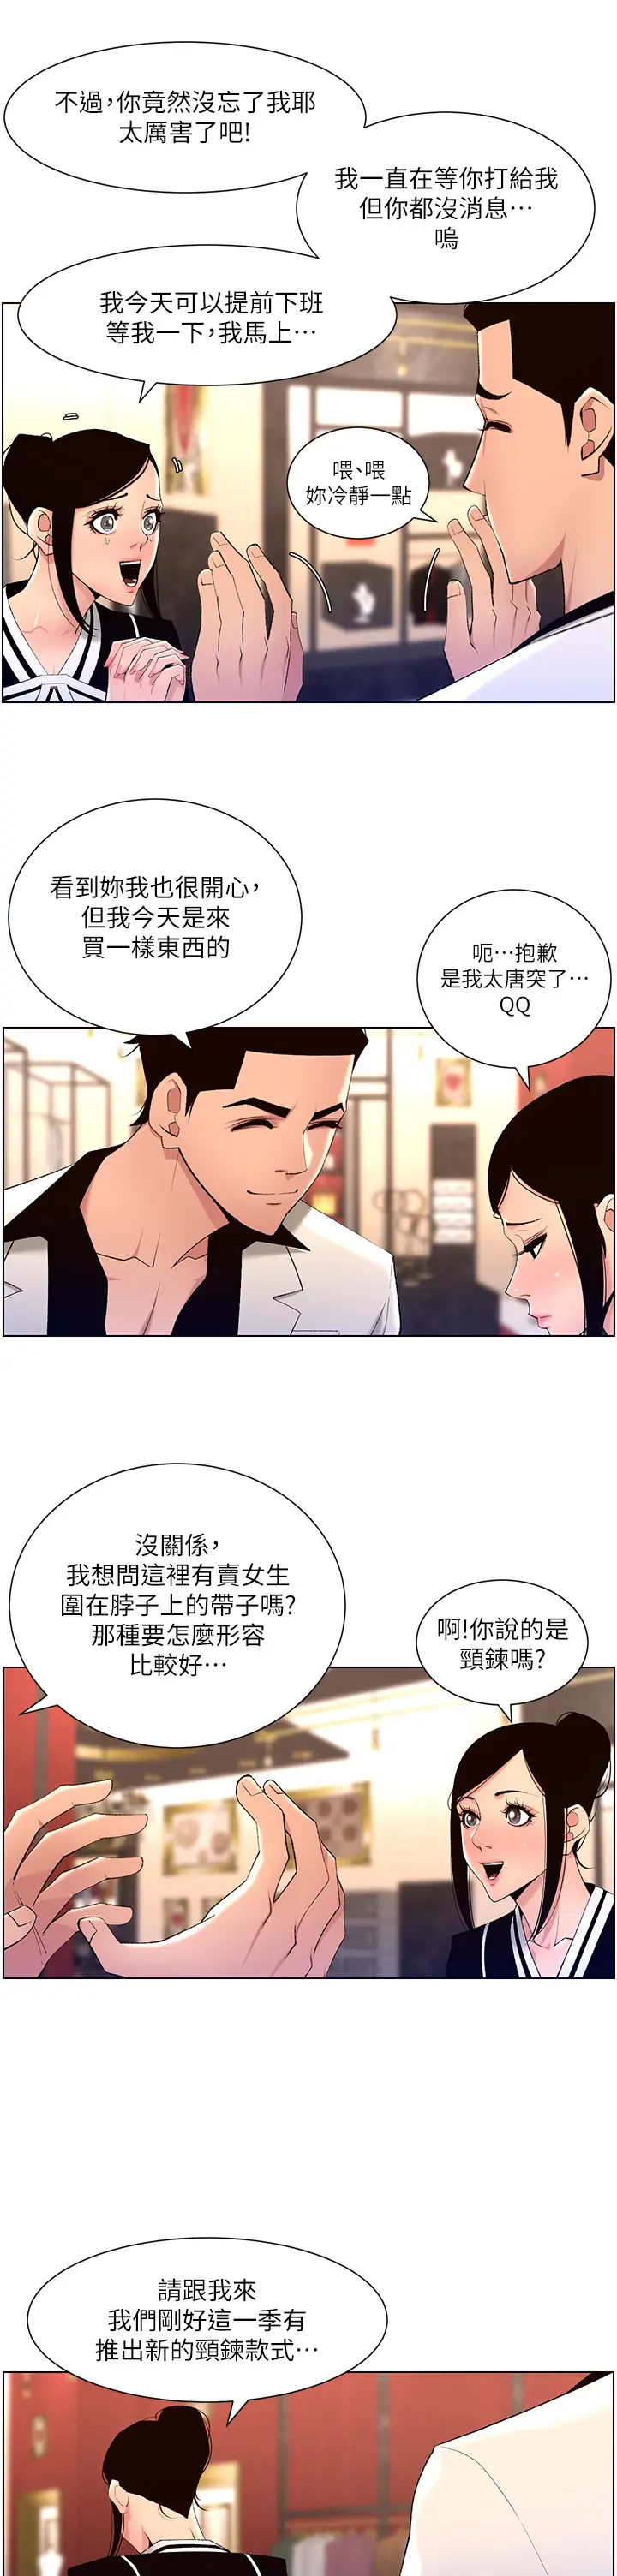 韩国污漫画 帝王App 第25话 主人请蹂躏我吧! 30